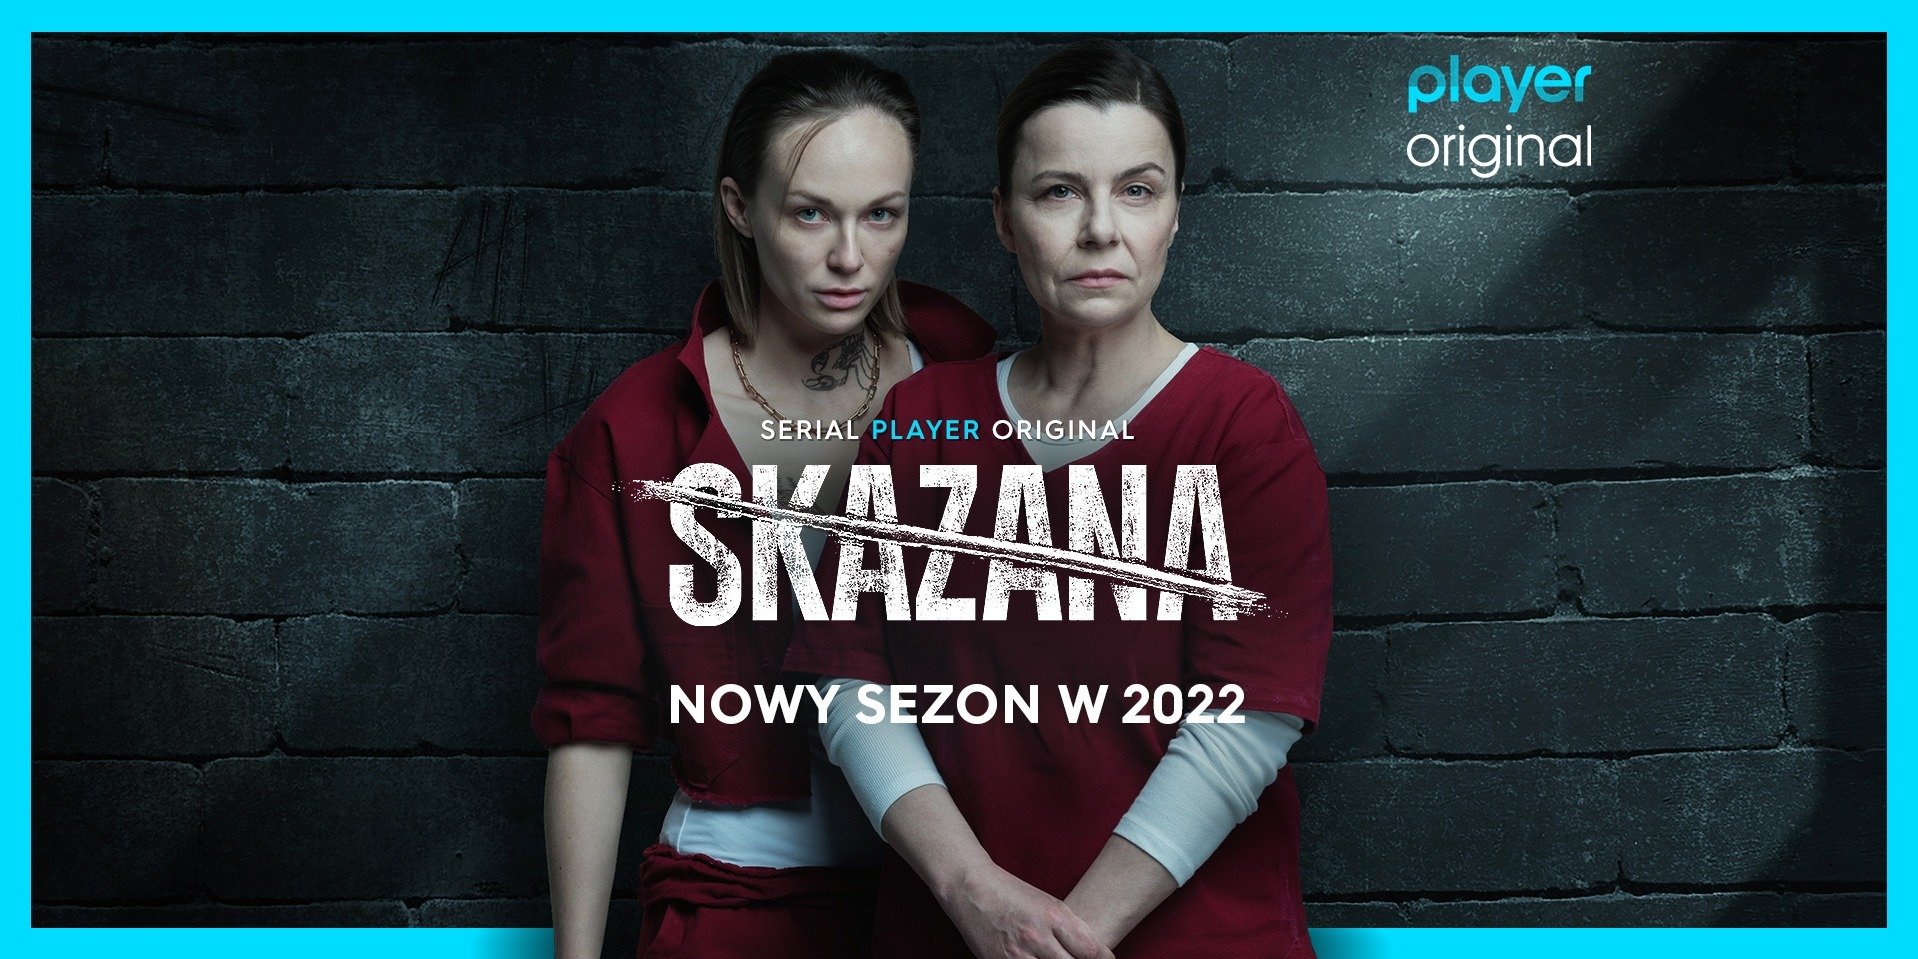 Jakie seriale będą jesienią 2022 na Player.pl? Szadź sezon 3 i inne nowości